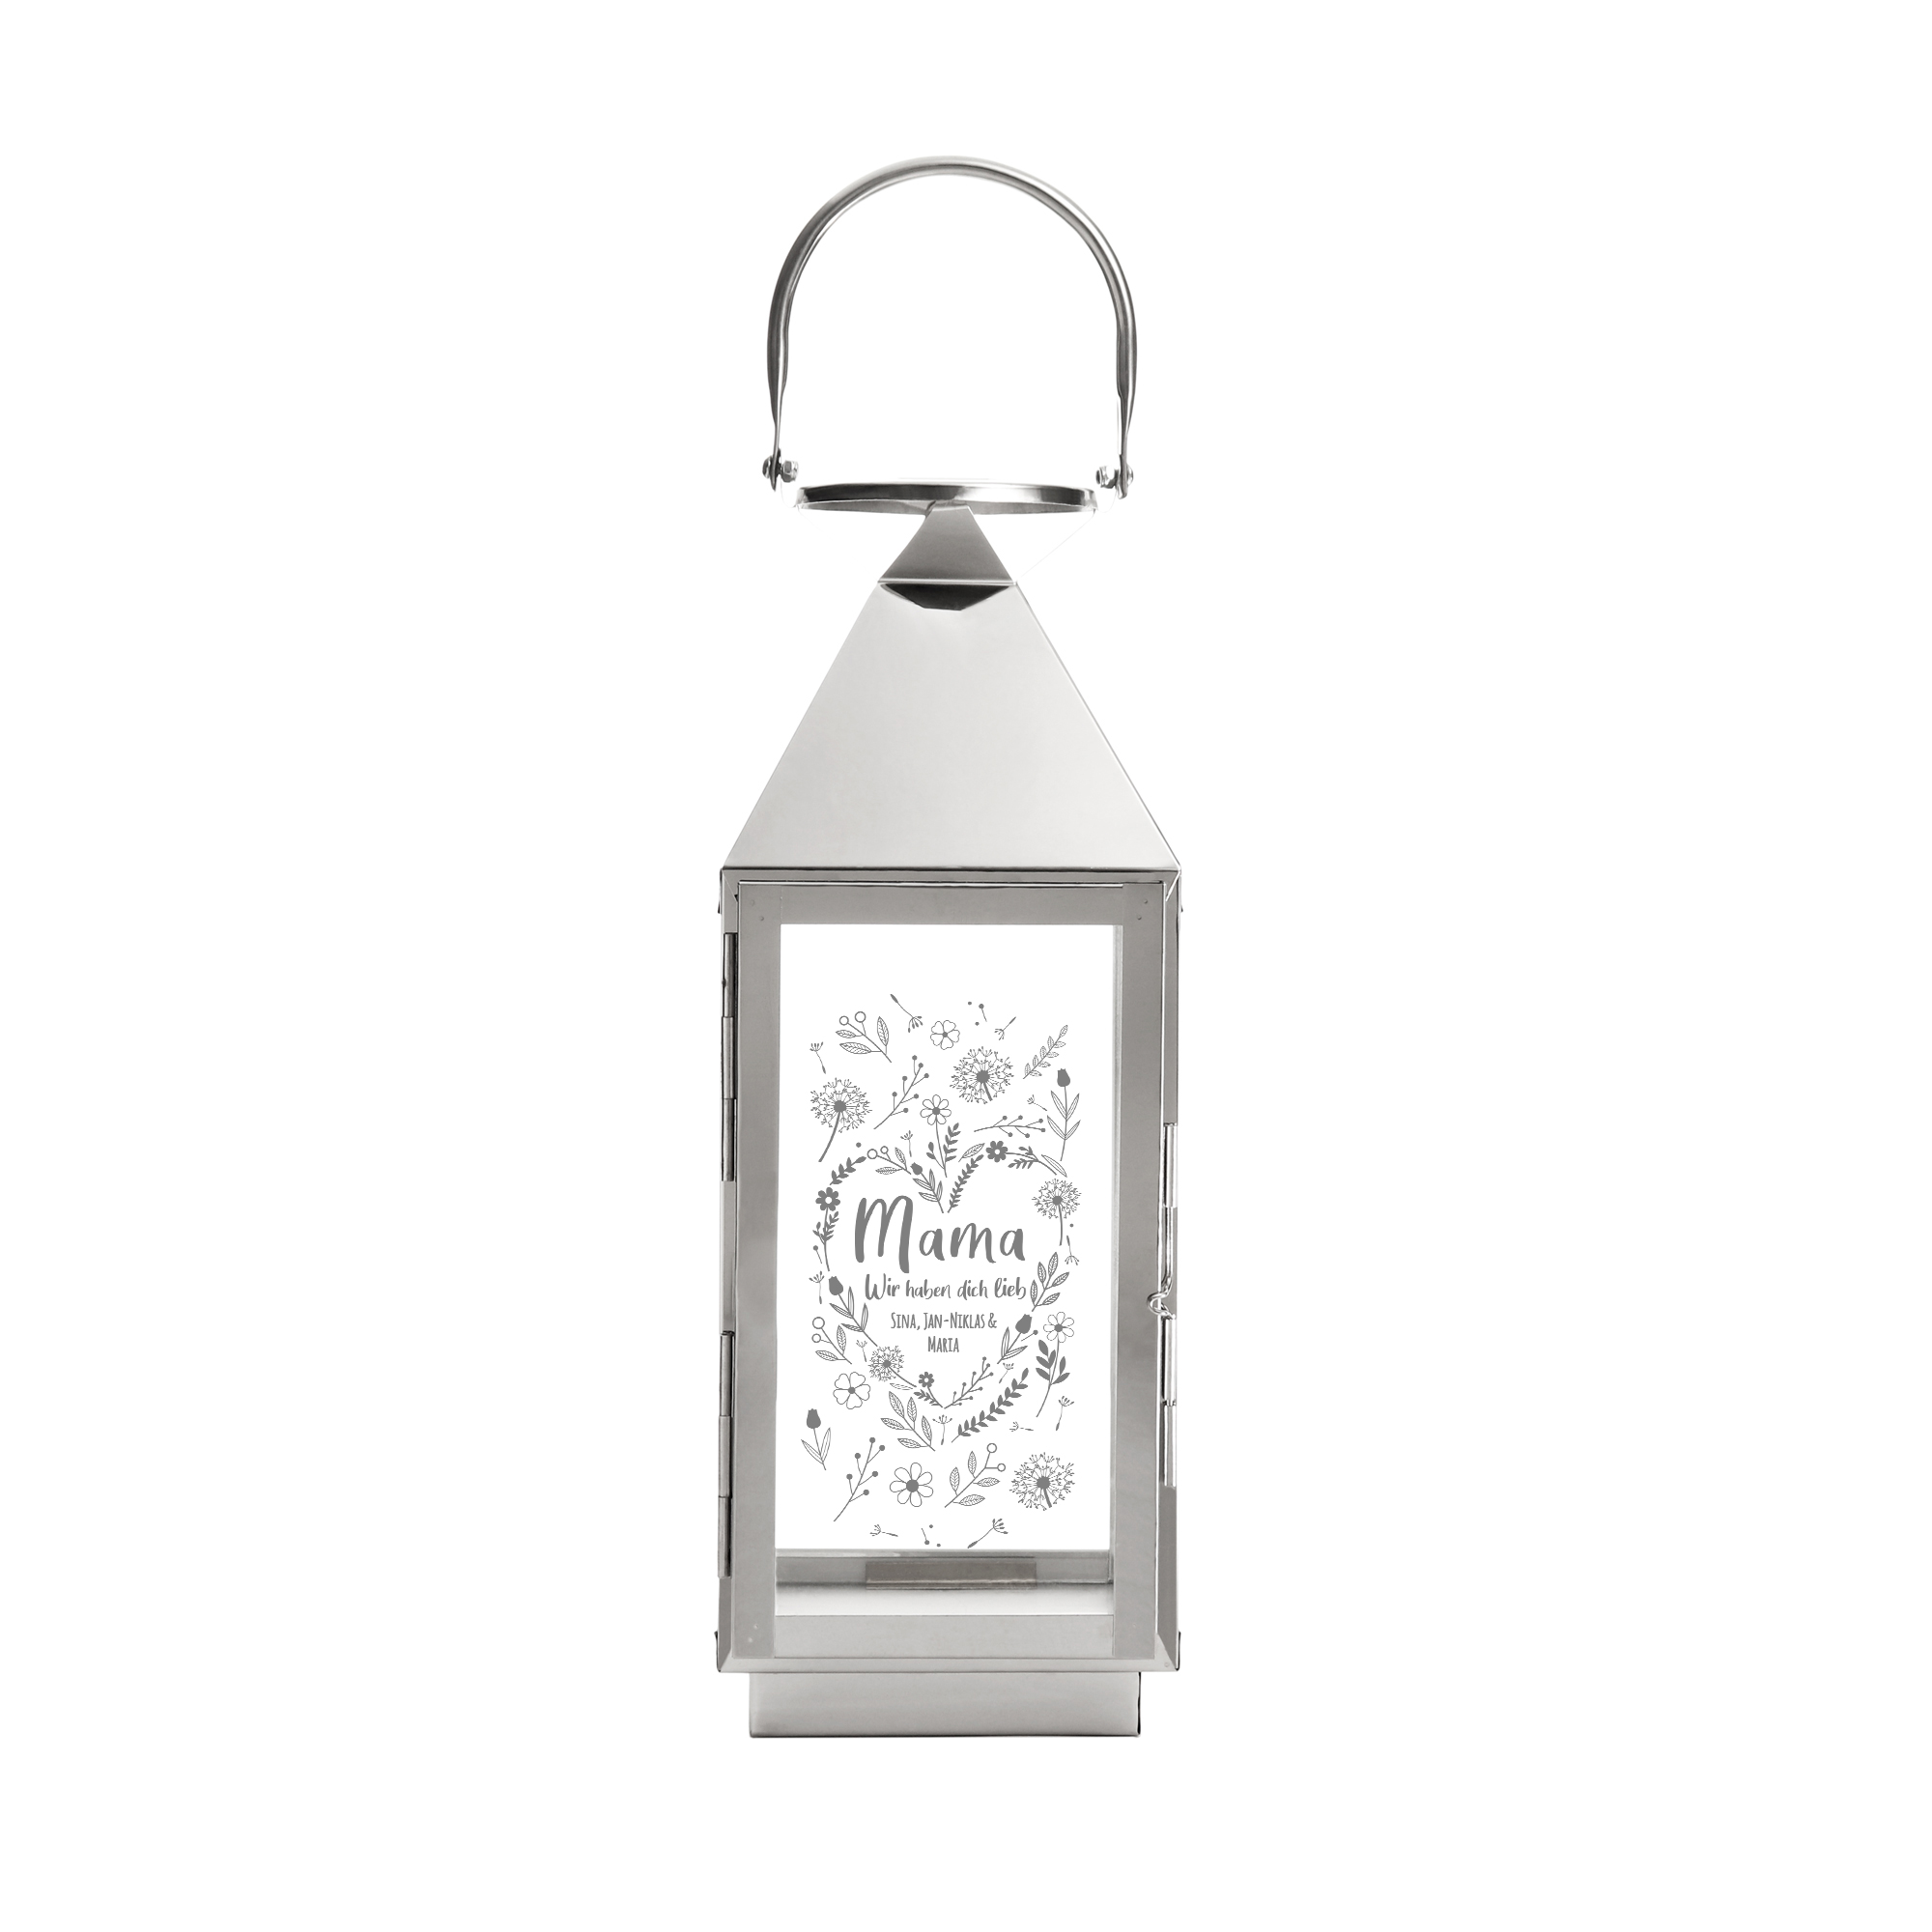 Die personalisierte Laterne - Blumenherz für Mama ist wetterfest für draußen und eine silberne Laterne outdoor als Muttertagsgeschenk